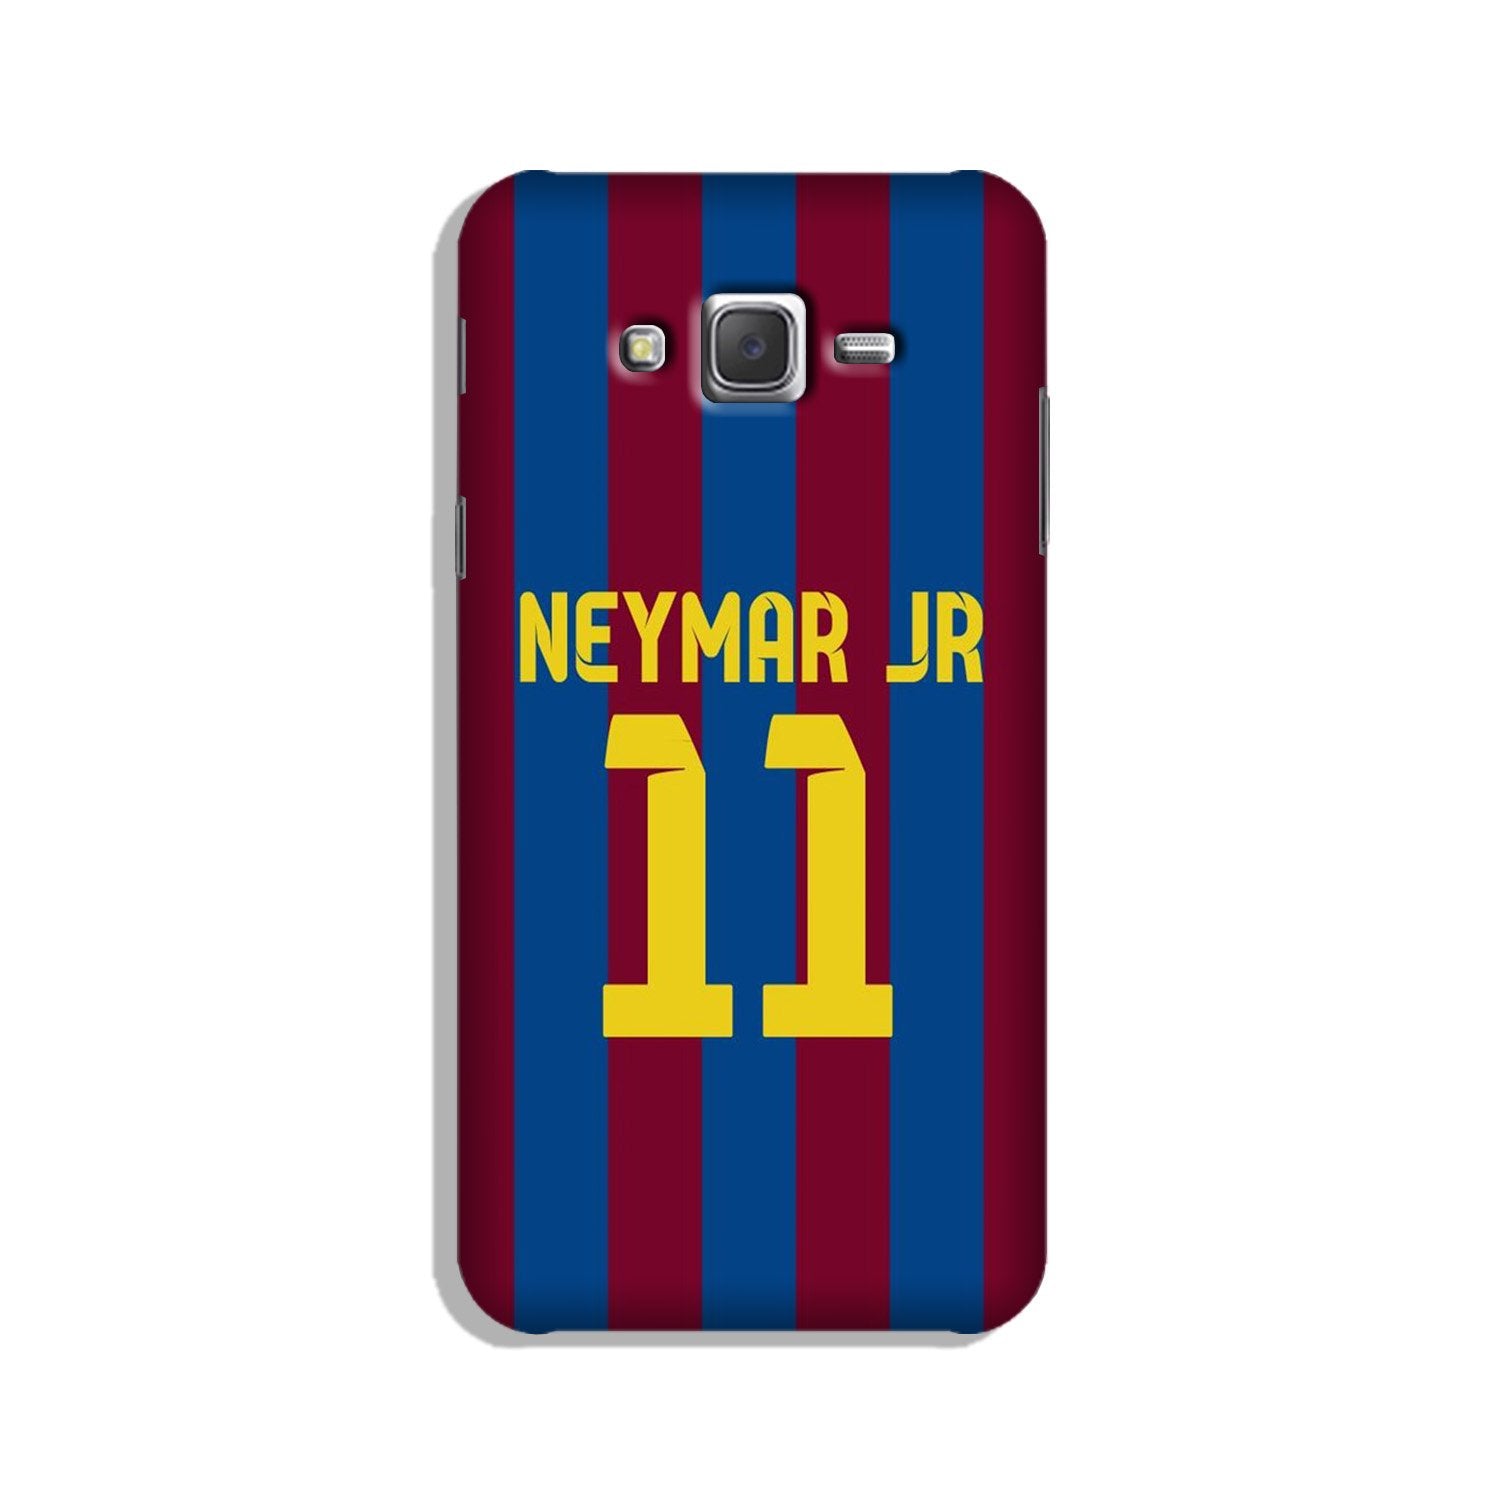 Neymar Jr Case for Galaxy J3 (2015)  (Design - 162)